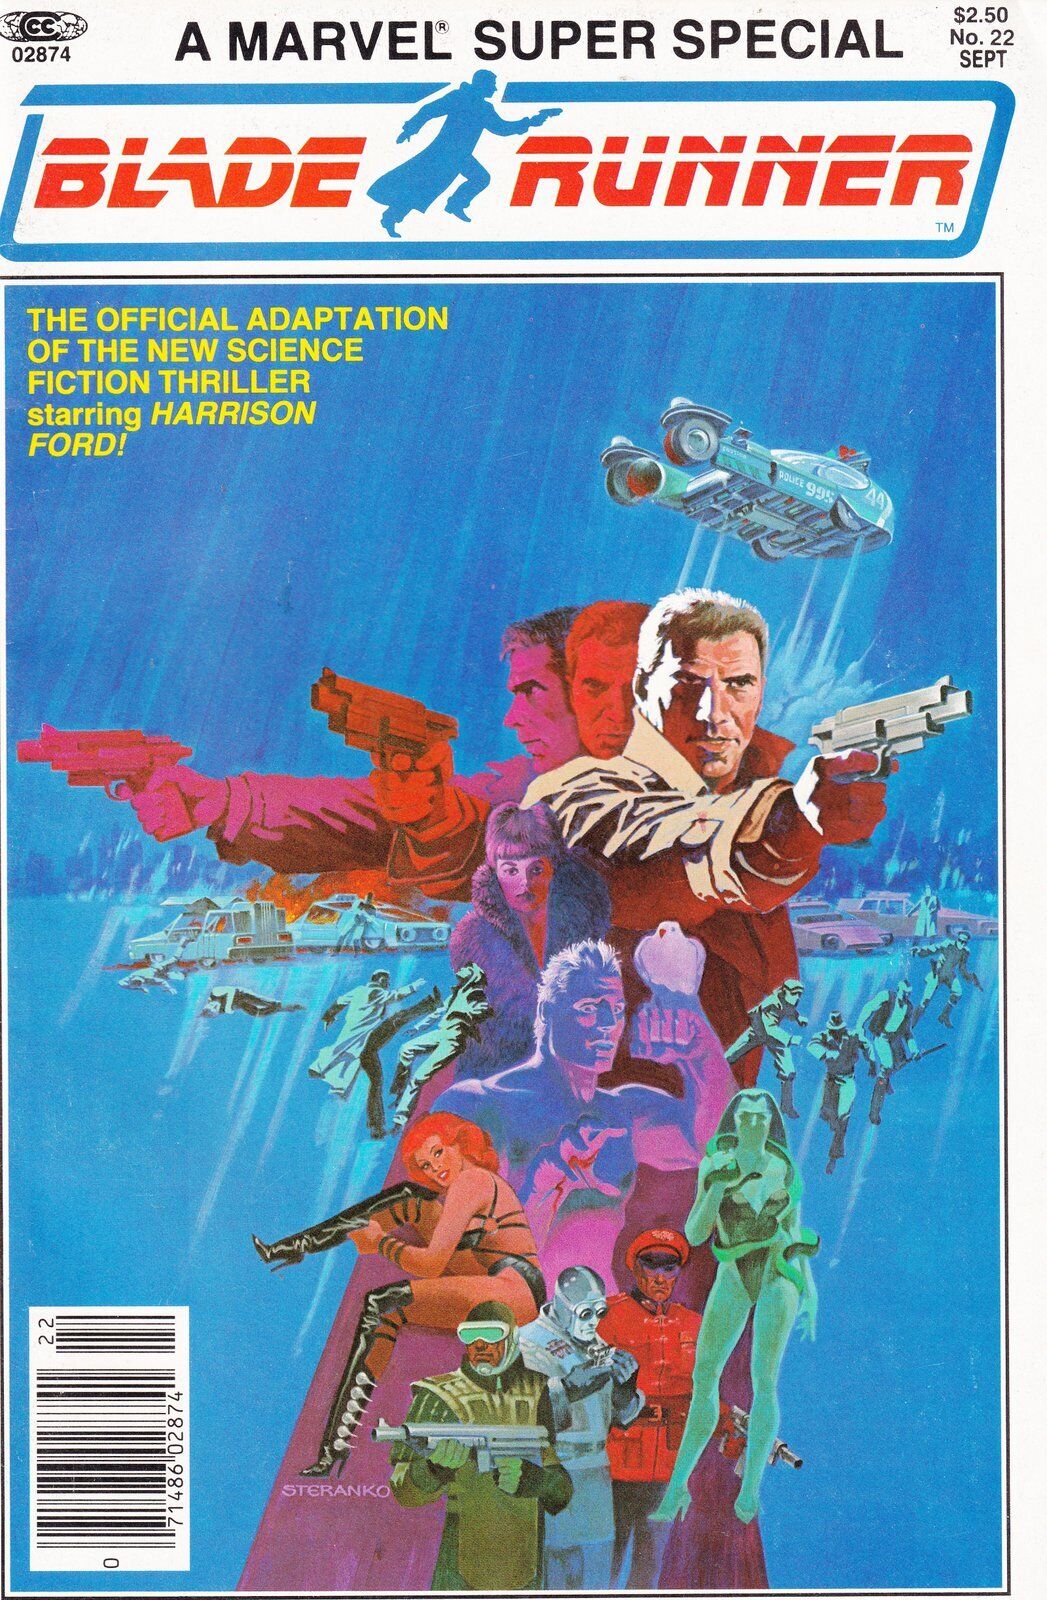 Marvel Super Special (Blade Runner) #22 Newsstand Cover Marvel Comics